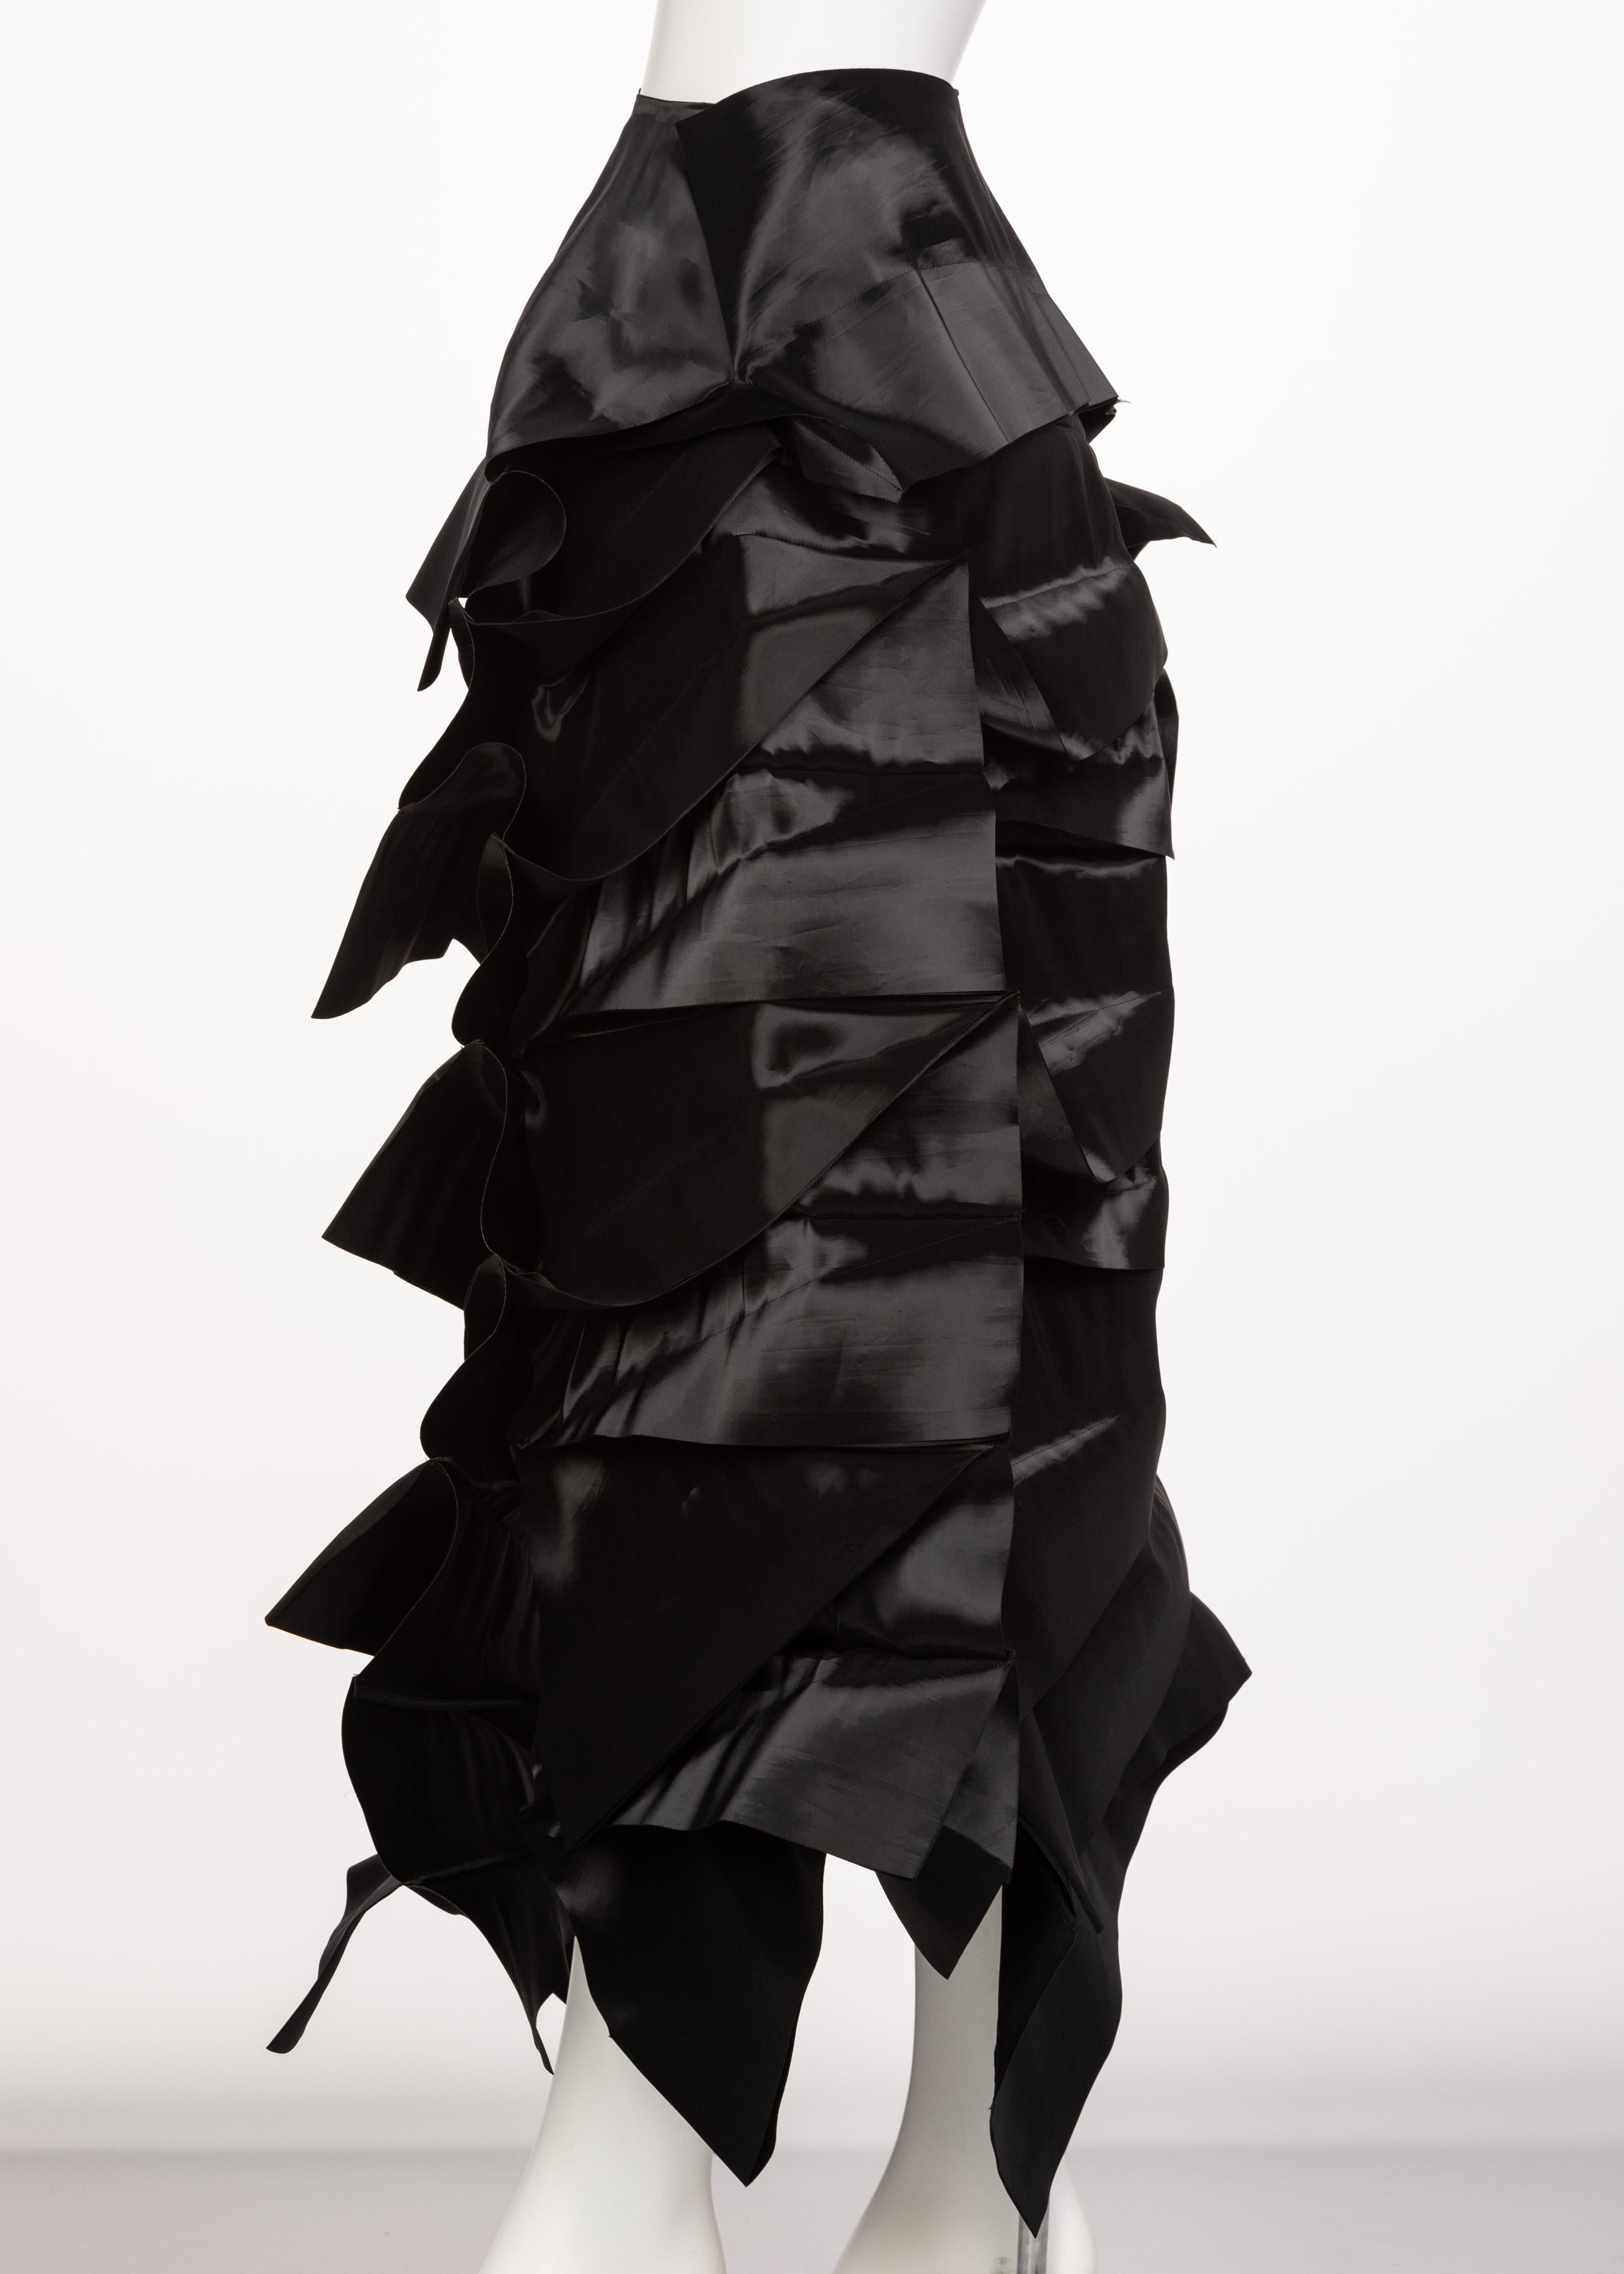 Junya Watanabe Comme des Garcons Sculptural Black Avant Garde Skirt 3